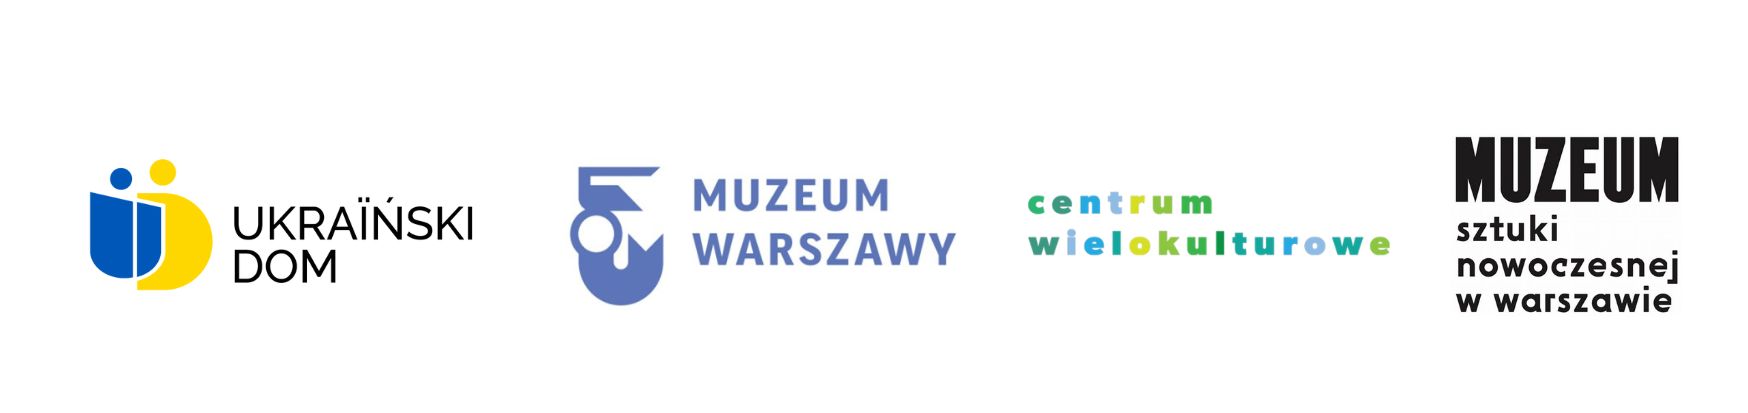 Logotypy organizatorów projektu Warszawa Różnorodna: Ukraińskiego Domu, Muzeum Warszawy, Centrum Wielokulturowego i Muzeum Sztuki Nowoczesnej